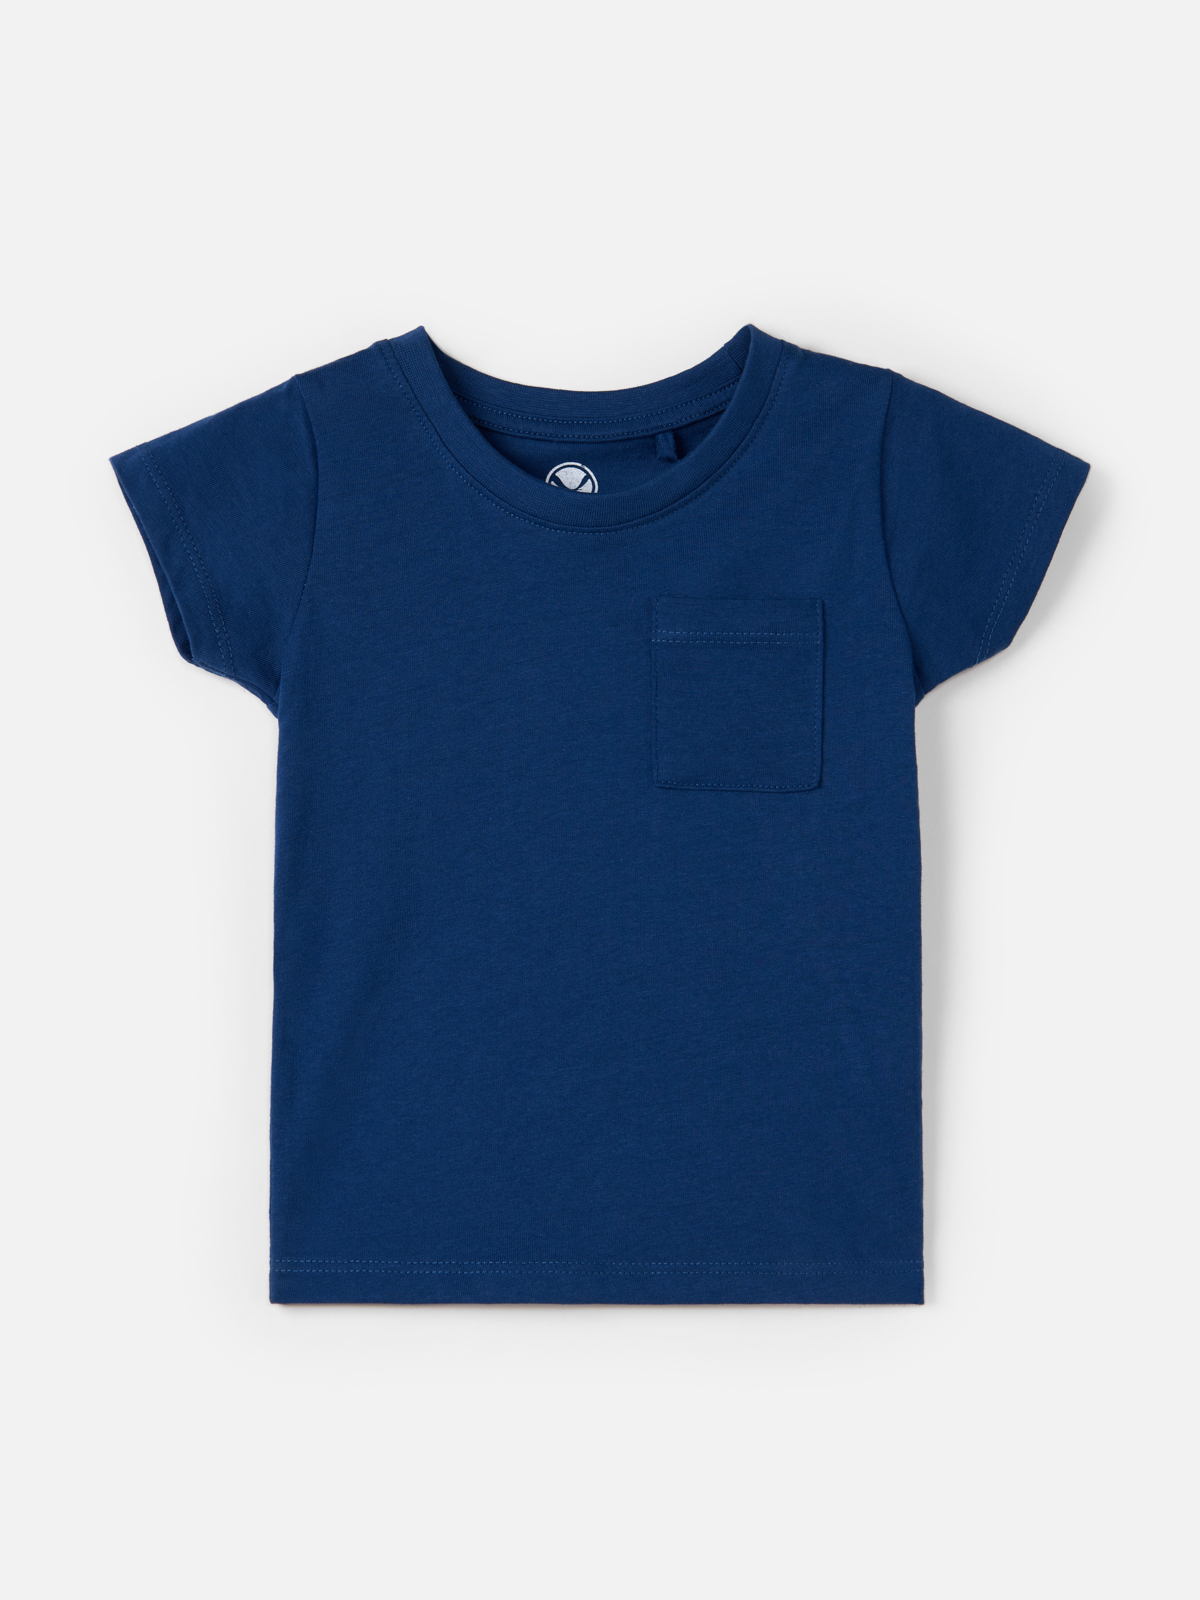 Футболка Harc Fashion для мальчиков, размер 122, HTC2306-001-Navy Blue футболка с коротким рукавом и дизайнерскими акцентами красная button blue 104